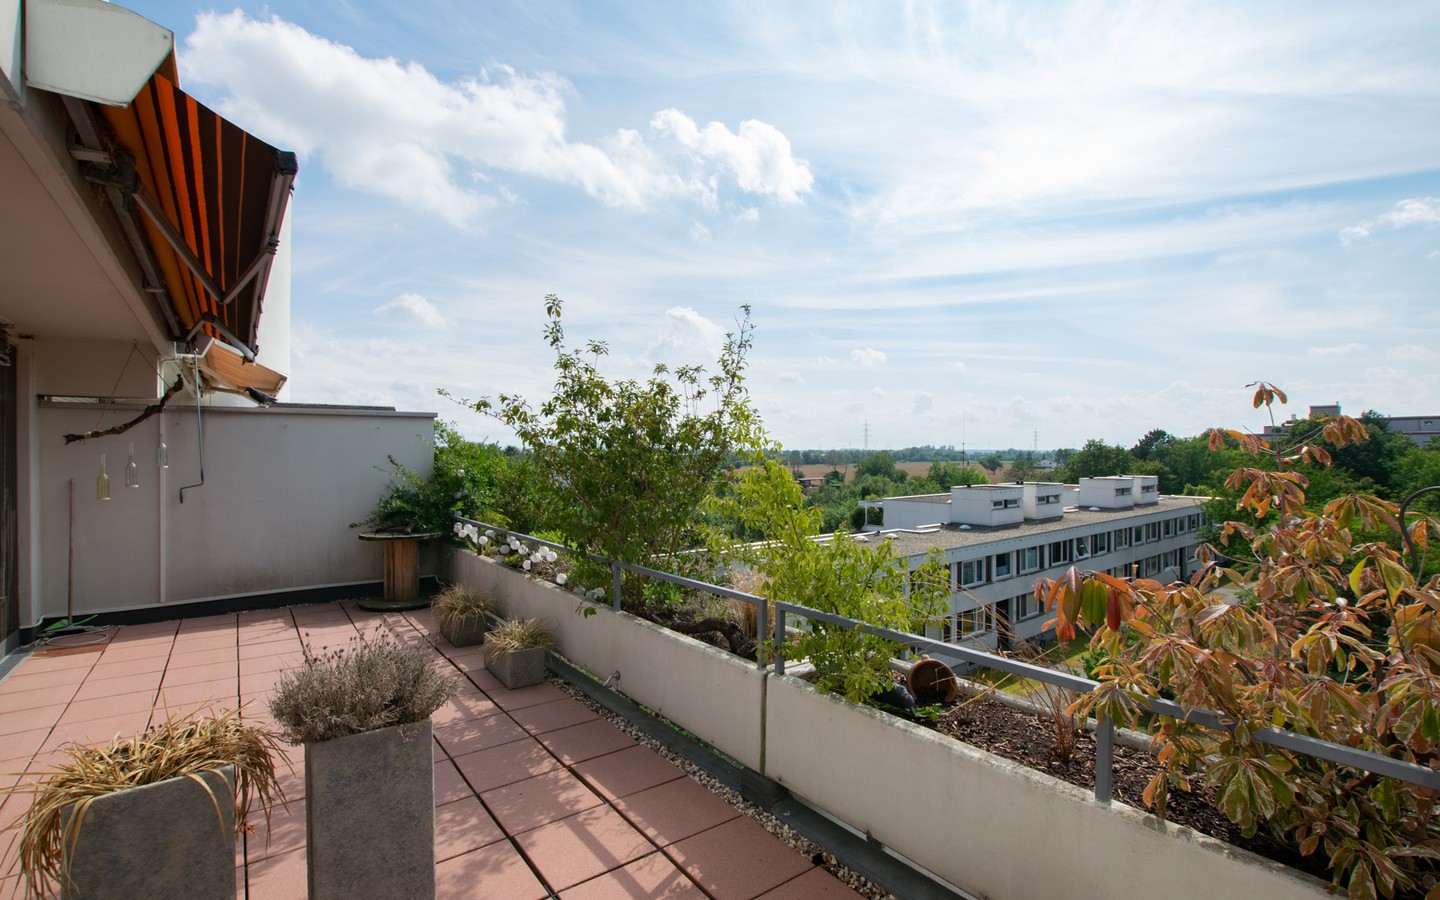 Terrasse - Schöne Aussichten: Renovierte Maisonettewohnung mit Terrasse und tollem Ausblick!